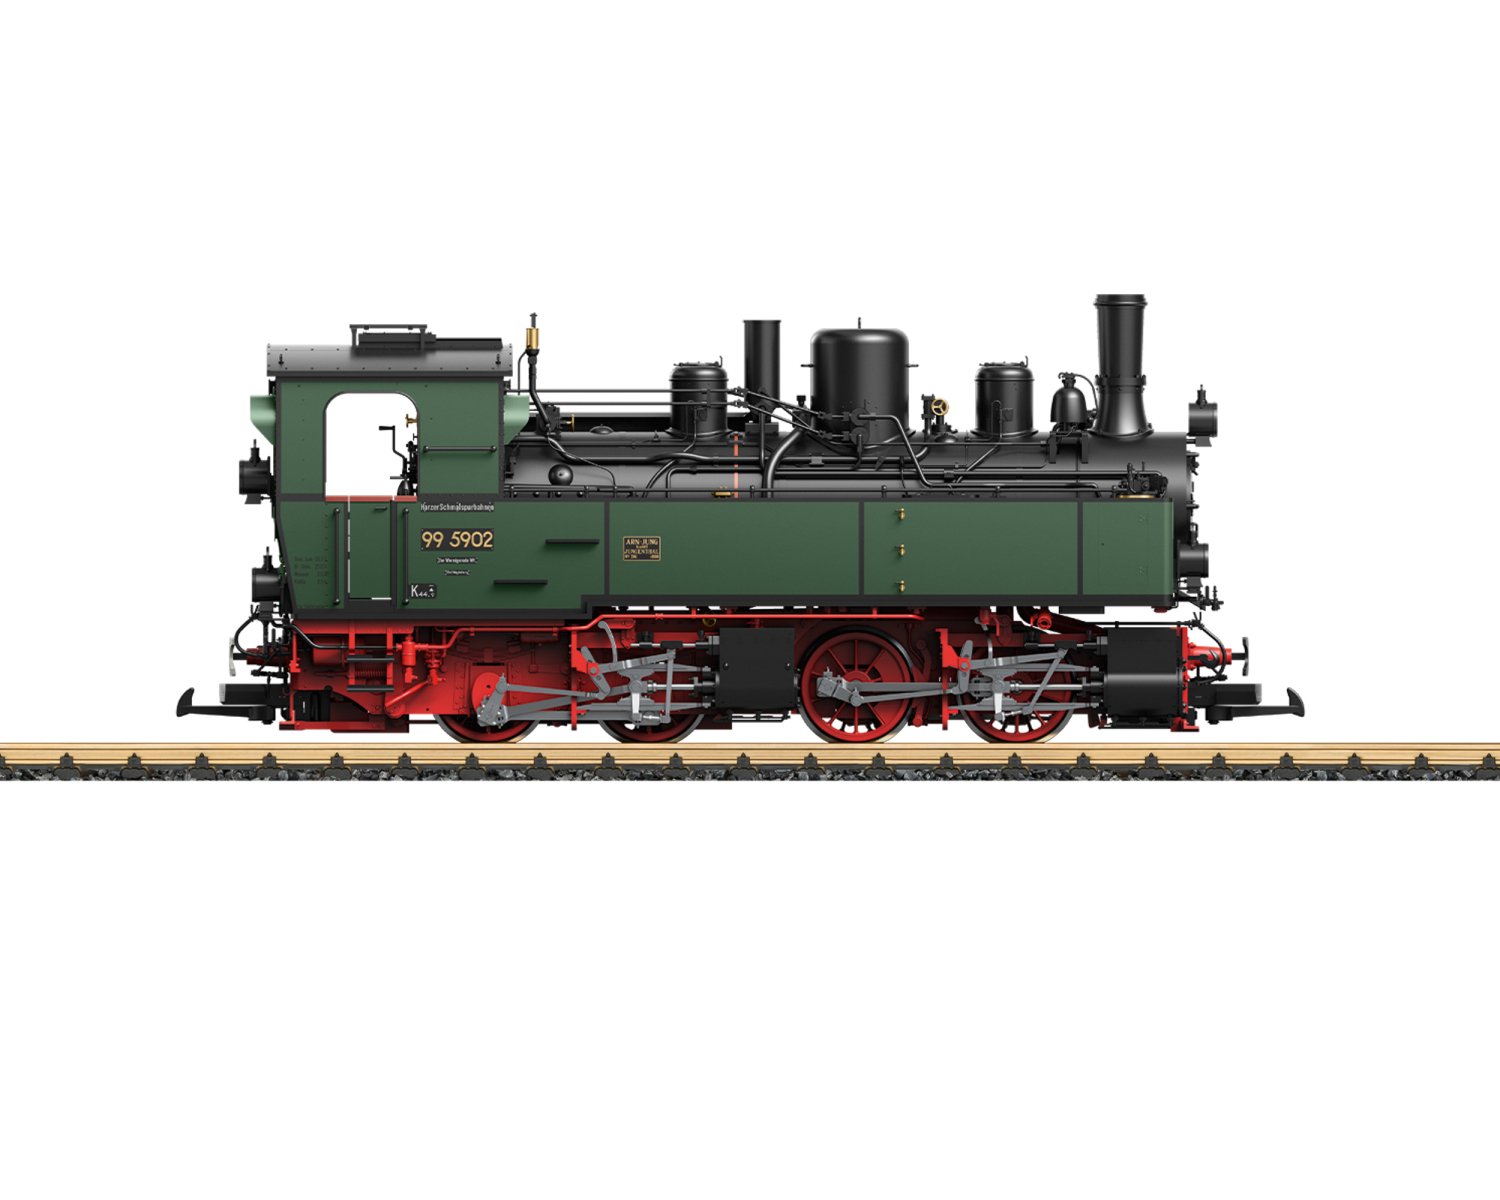 レーマン(LGB) Gゲージ HHSB Steam Locomotive, Road Number 99 5902 